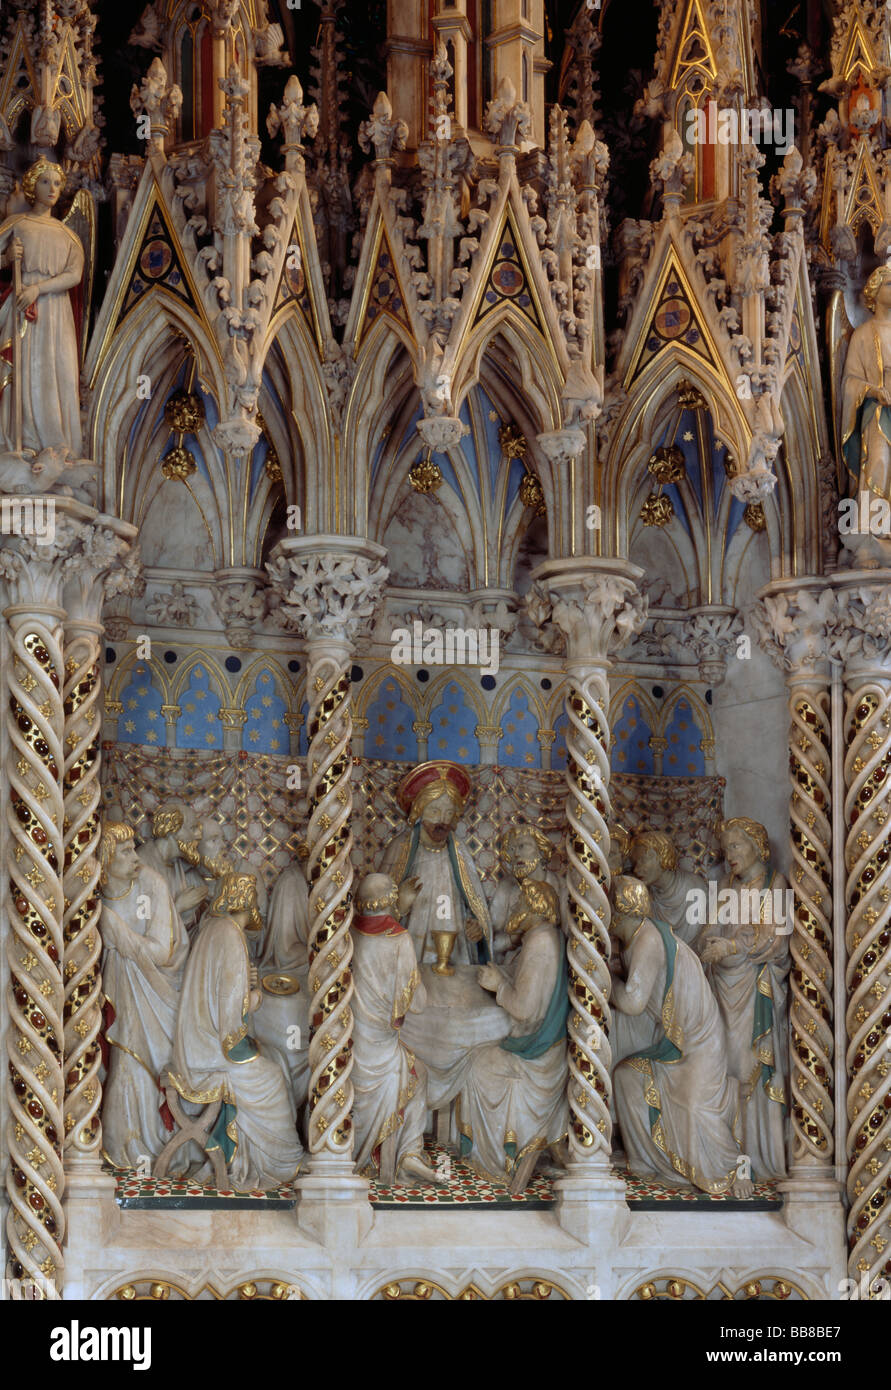 Cathédrale d'Ely haut autel retable du 19e siècle Dernière Cène Banque D'Images